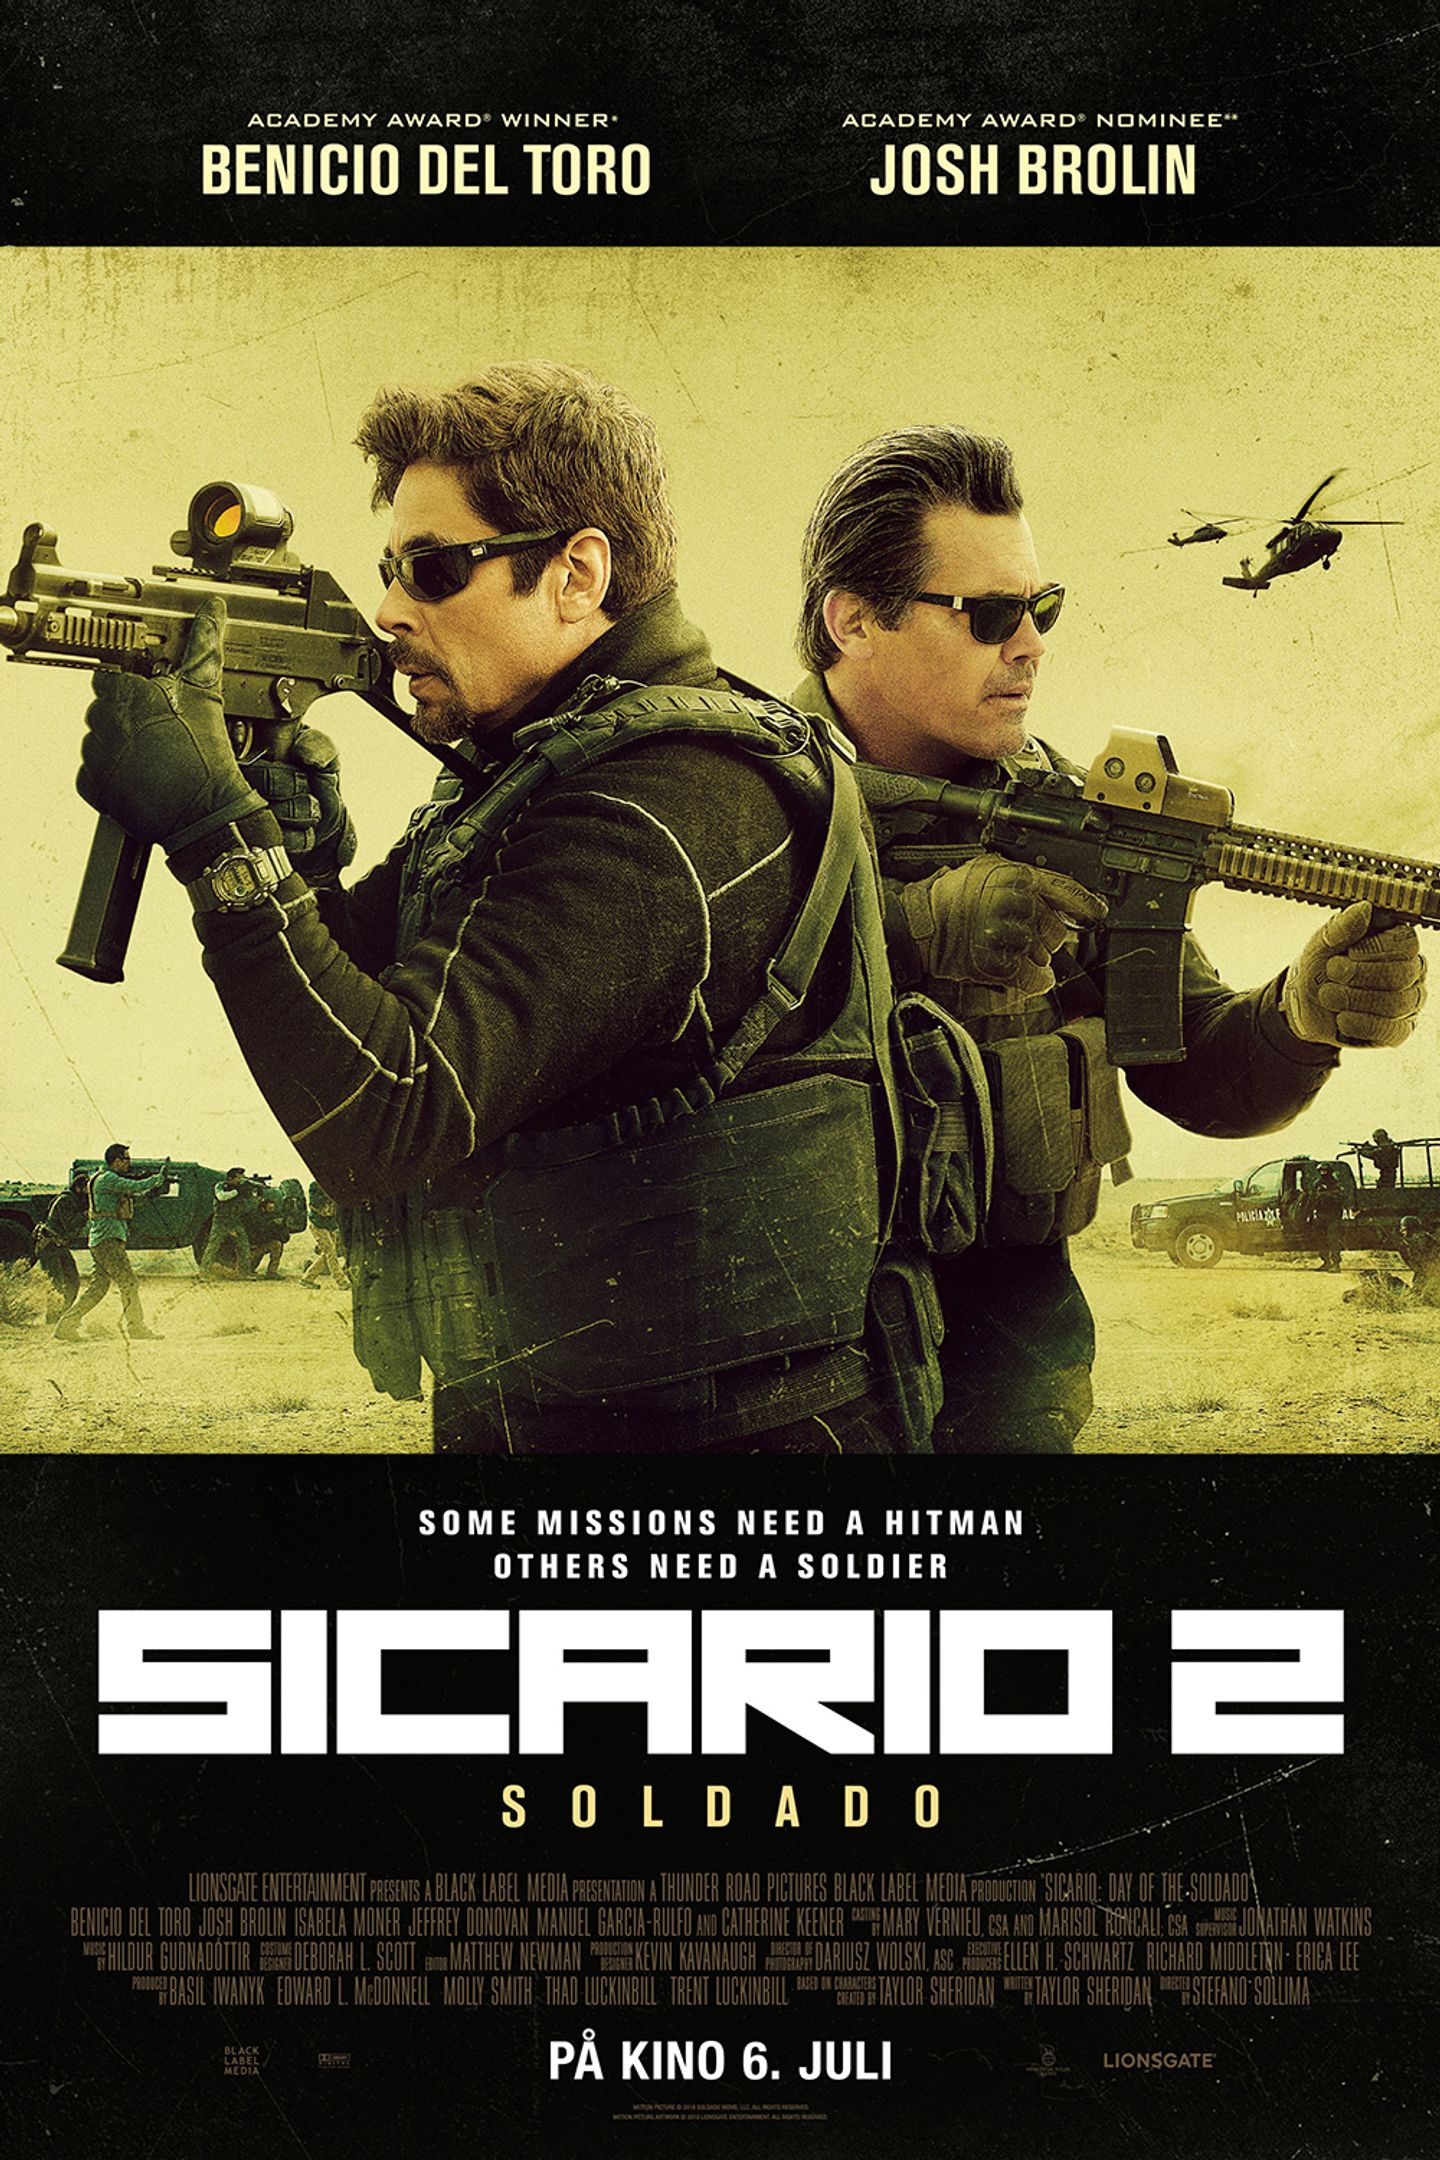 Plakat for 'Sicario 2: Soldado'